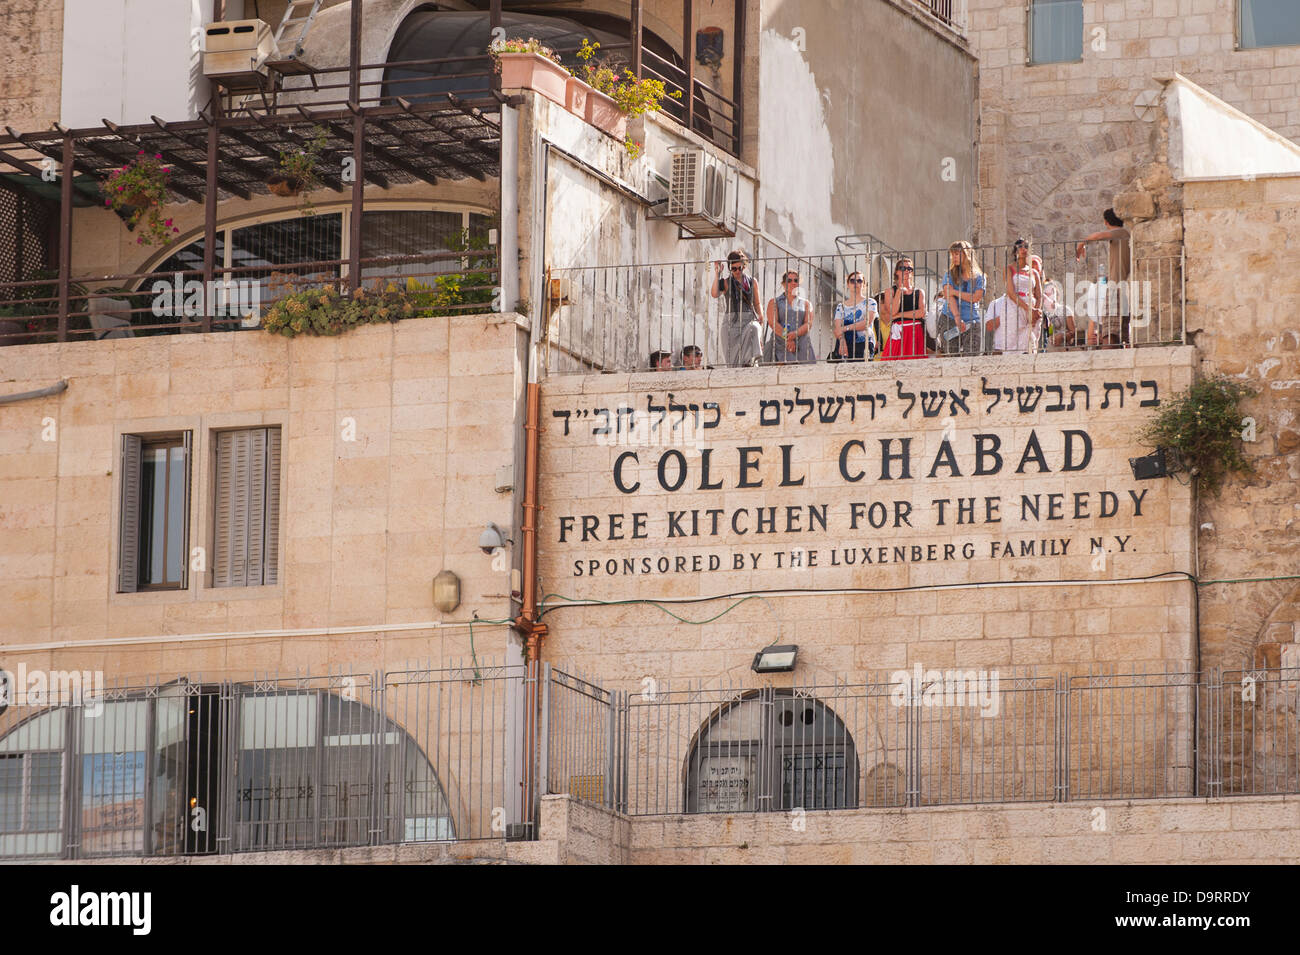 Israel Jerusalem Altstadt orthodoxen jüdischen Colel Chabad free Küche für Bedürftige gesponsert Luxenberg Familie Touristen Touristen Geländer Balkon Stockfoto